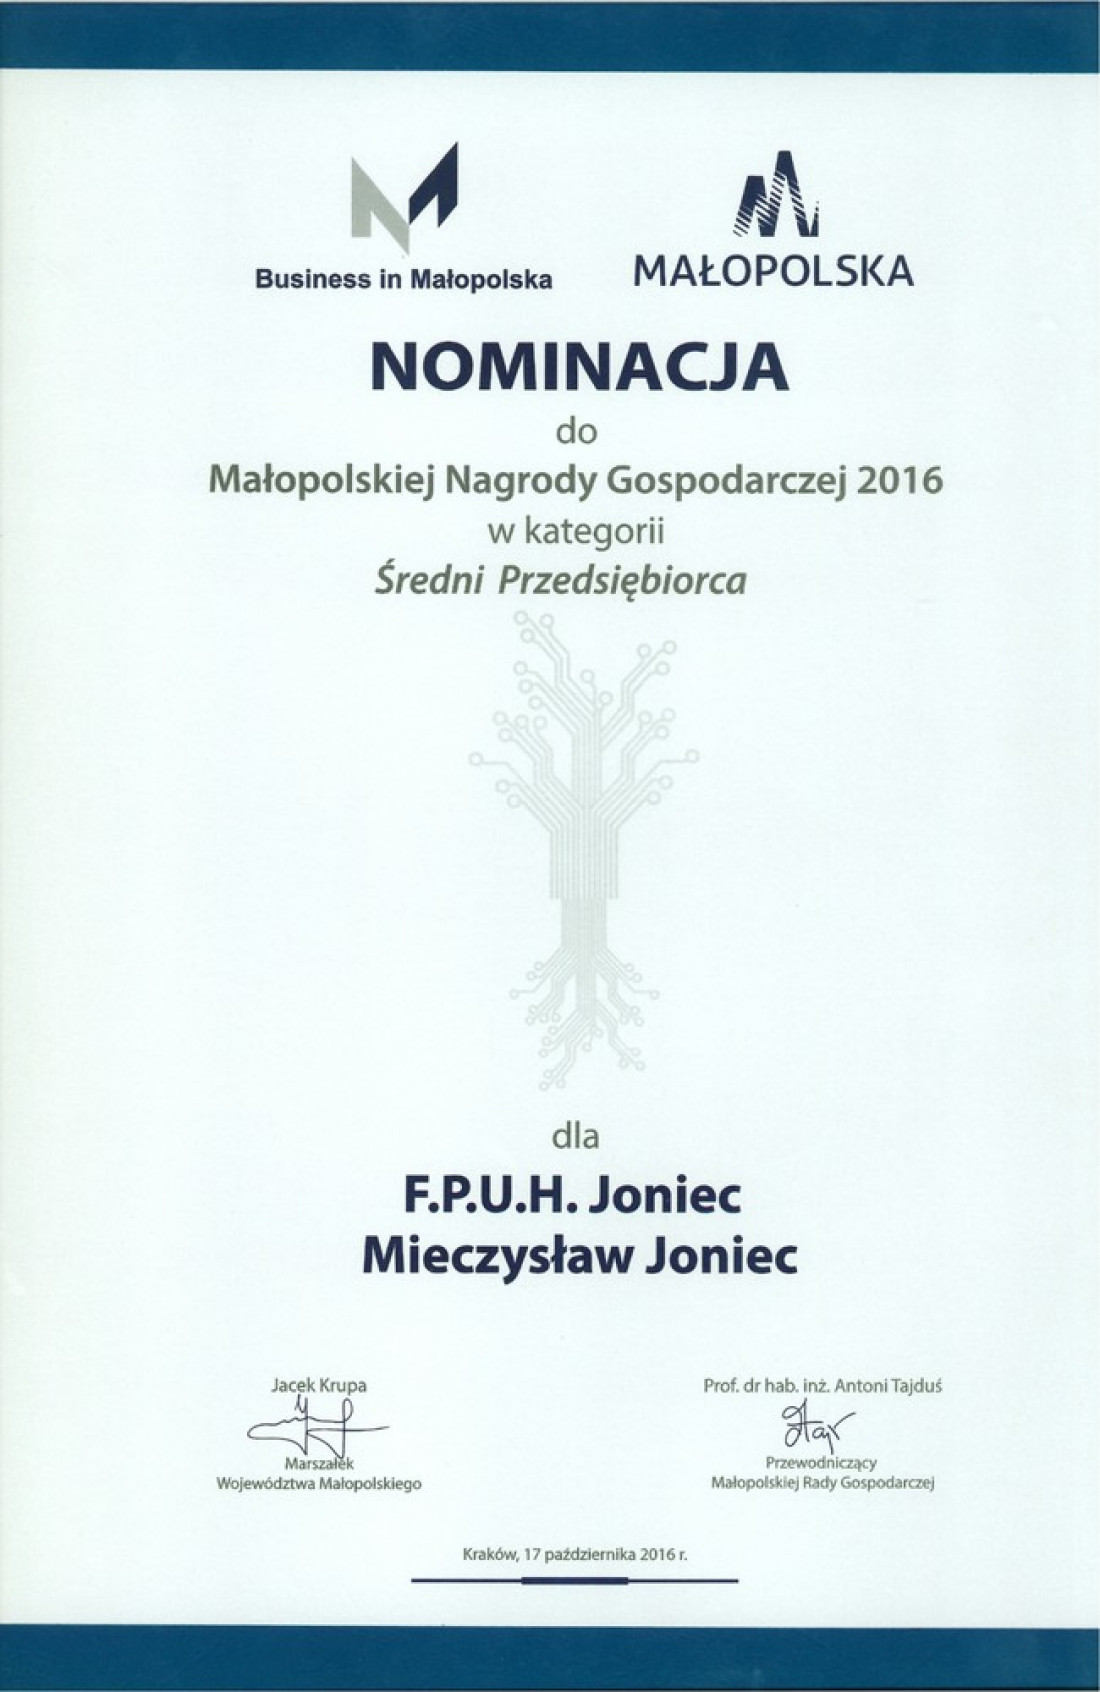 JONIEC laureatem Małopolskiej Nagrody Gospodarczej 2016